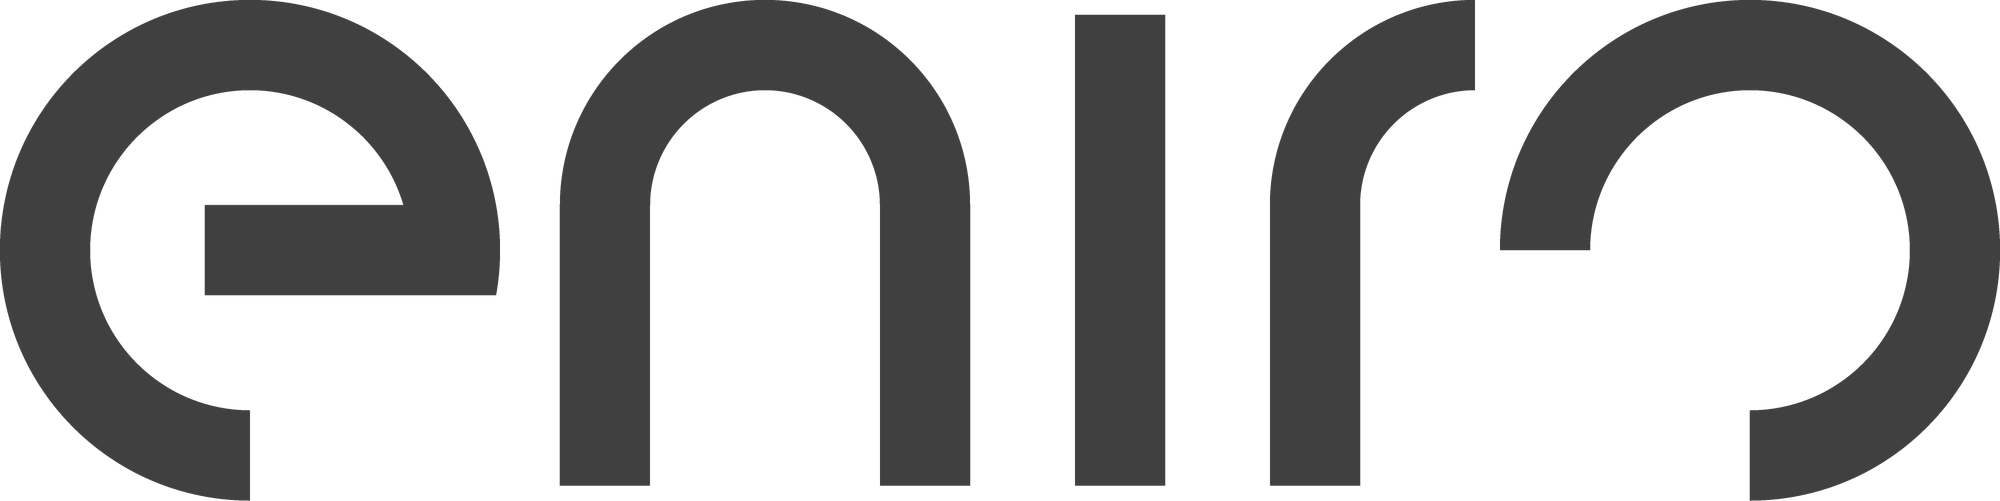 Eniro | Logopedia | FANDOM powered by Wikia